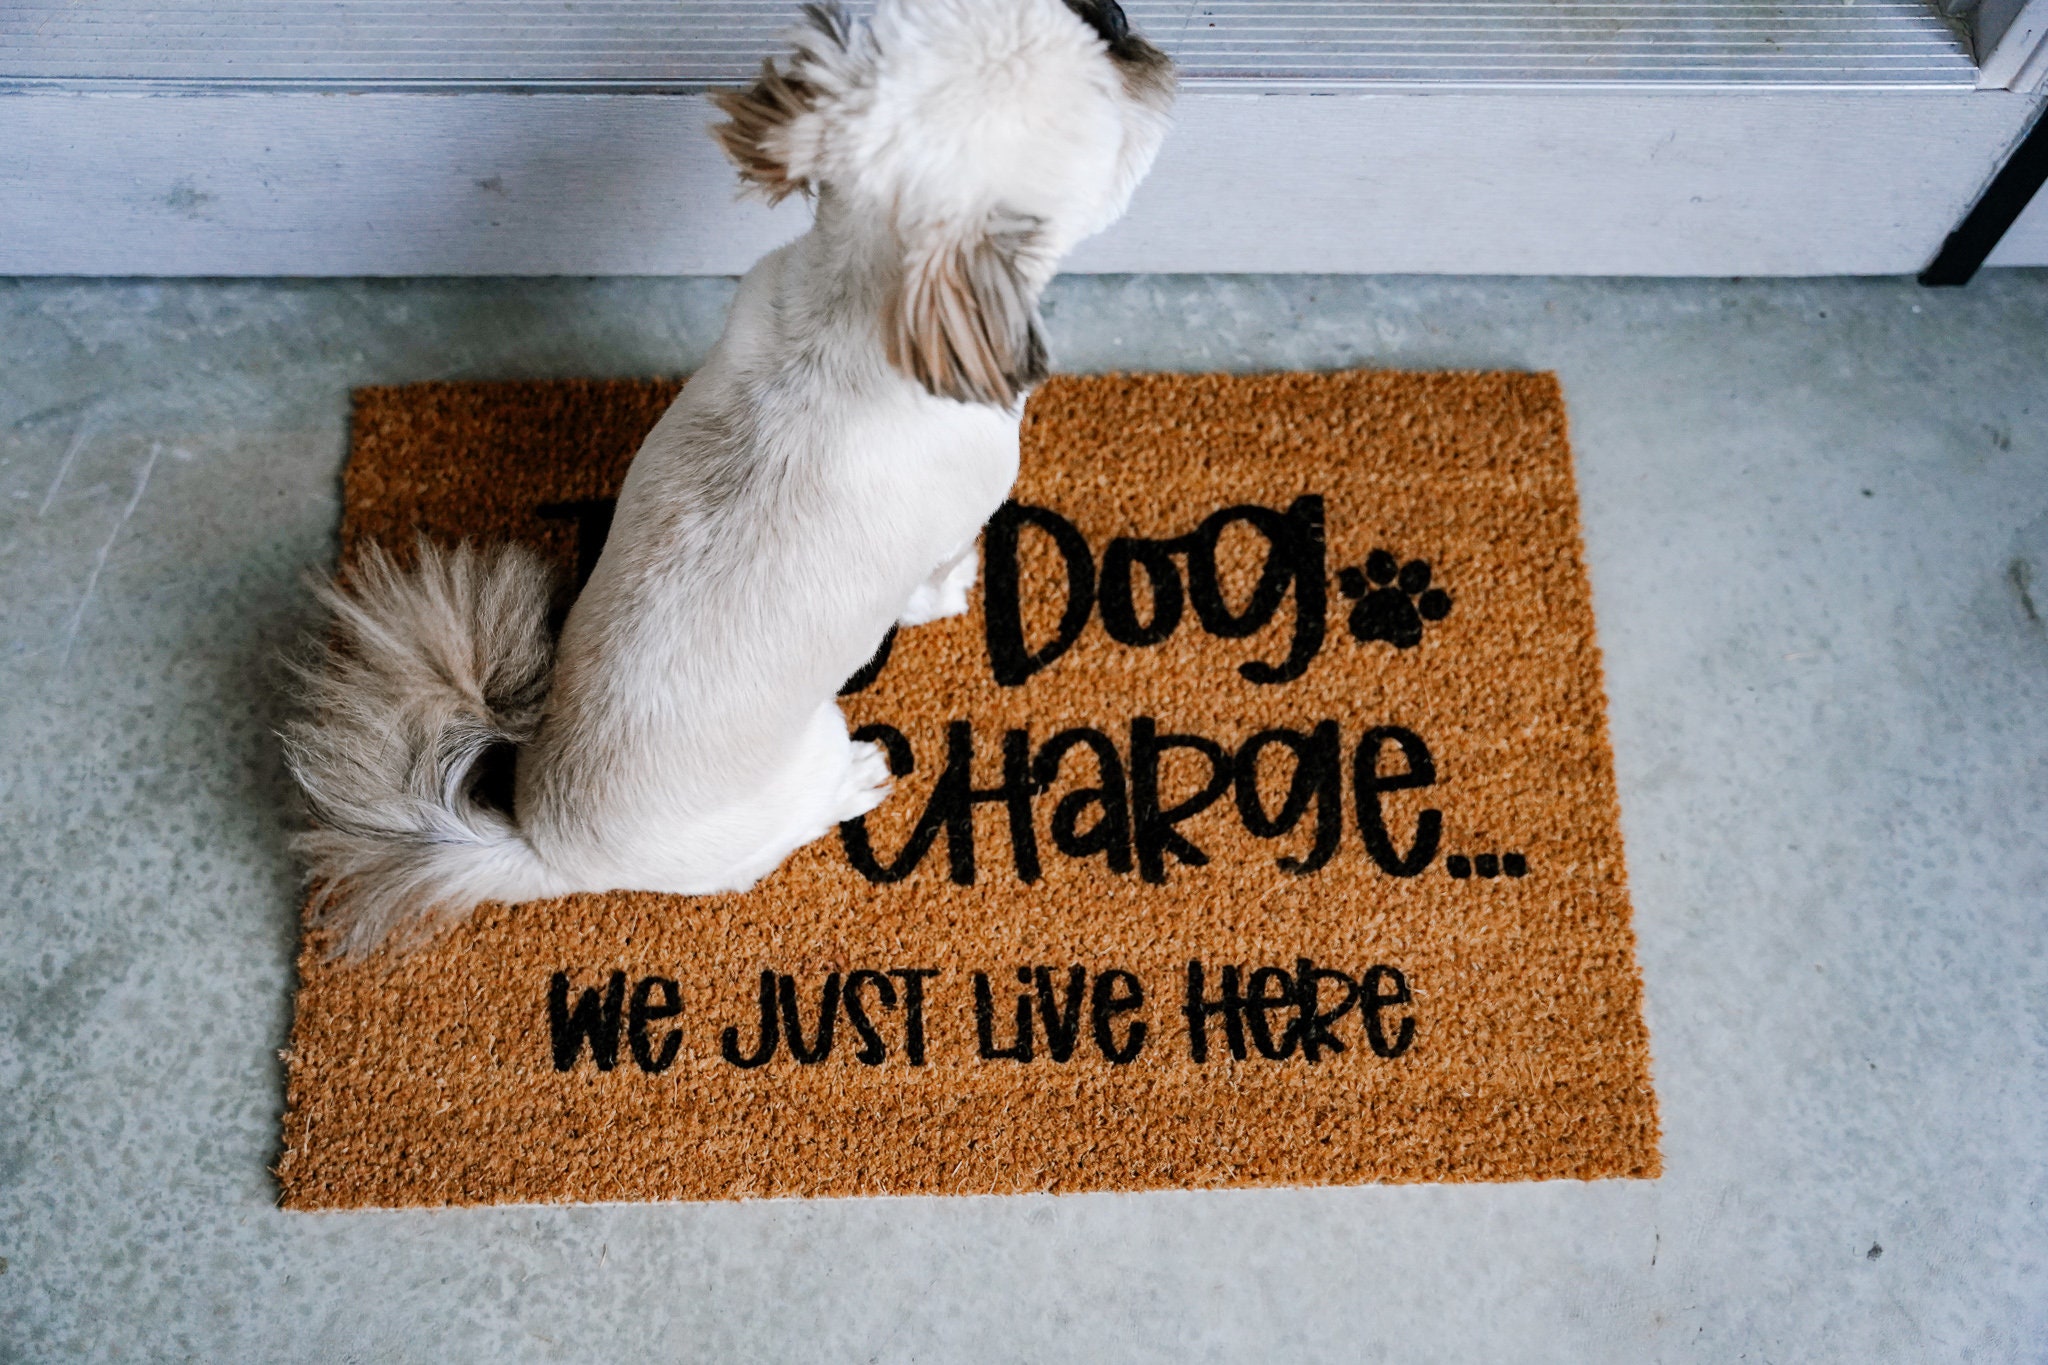  Welcome to Our Home - Tapete para puerta trasera para entrada  al aire libre, imagen y nombre de perro, tapete de fibra de coco para  entrada, alfombra de porche delantero, alfombra